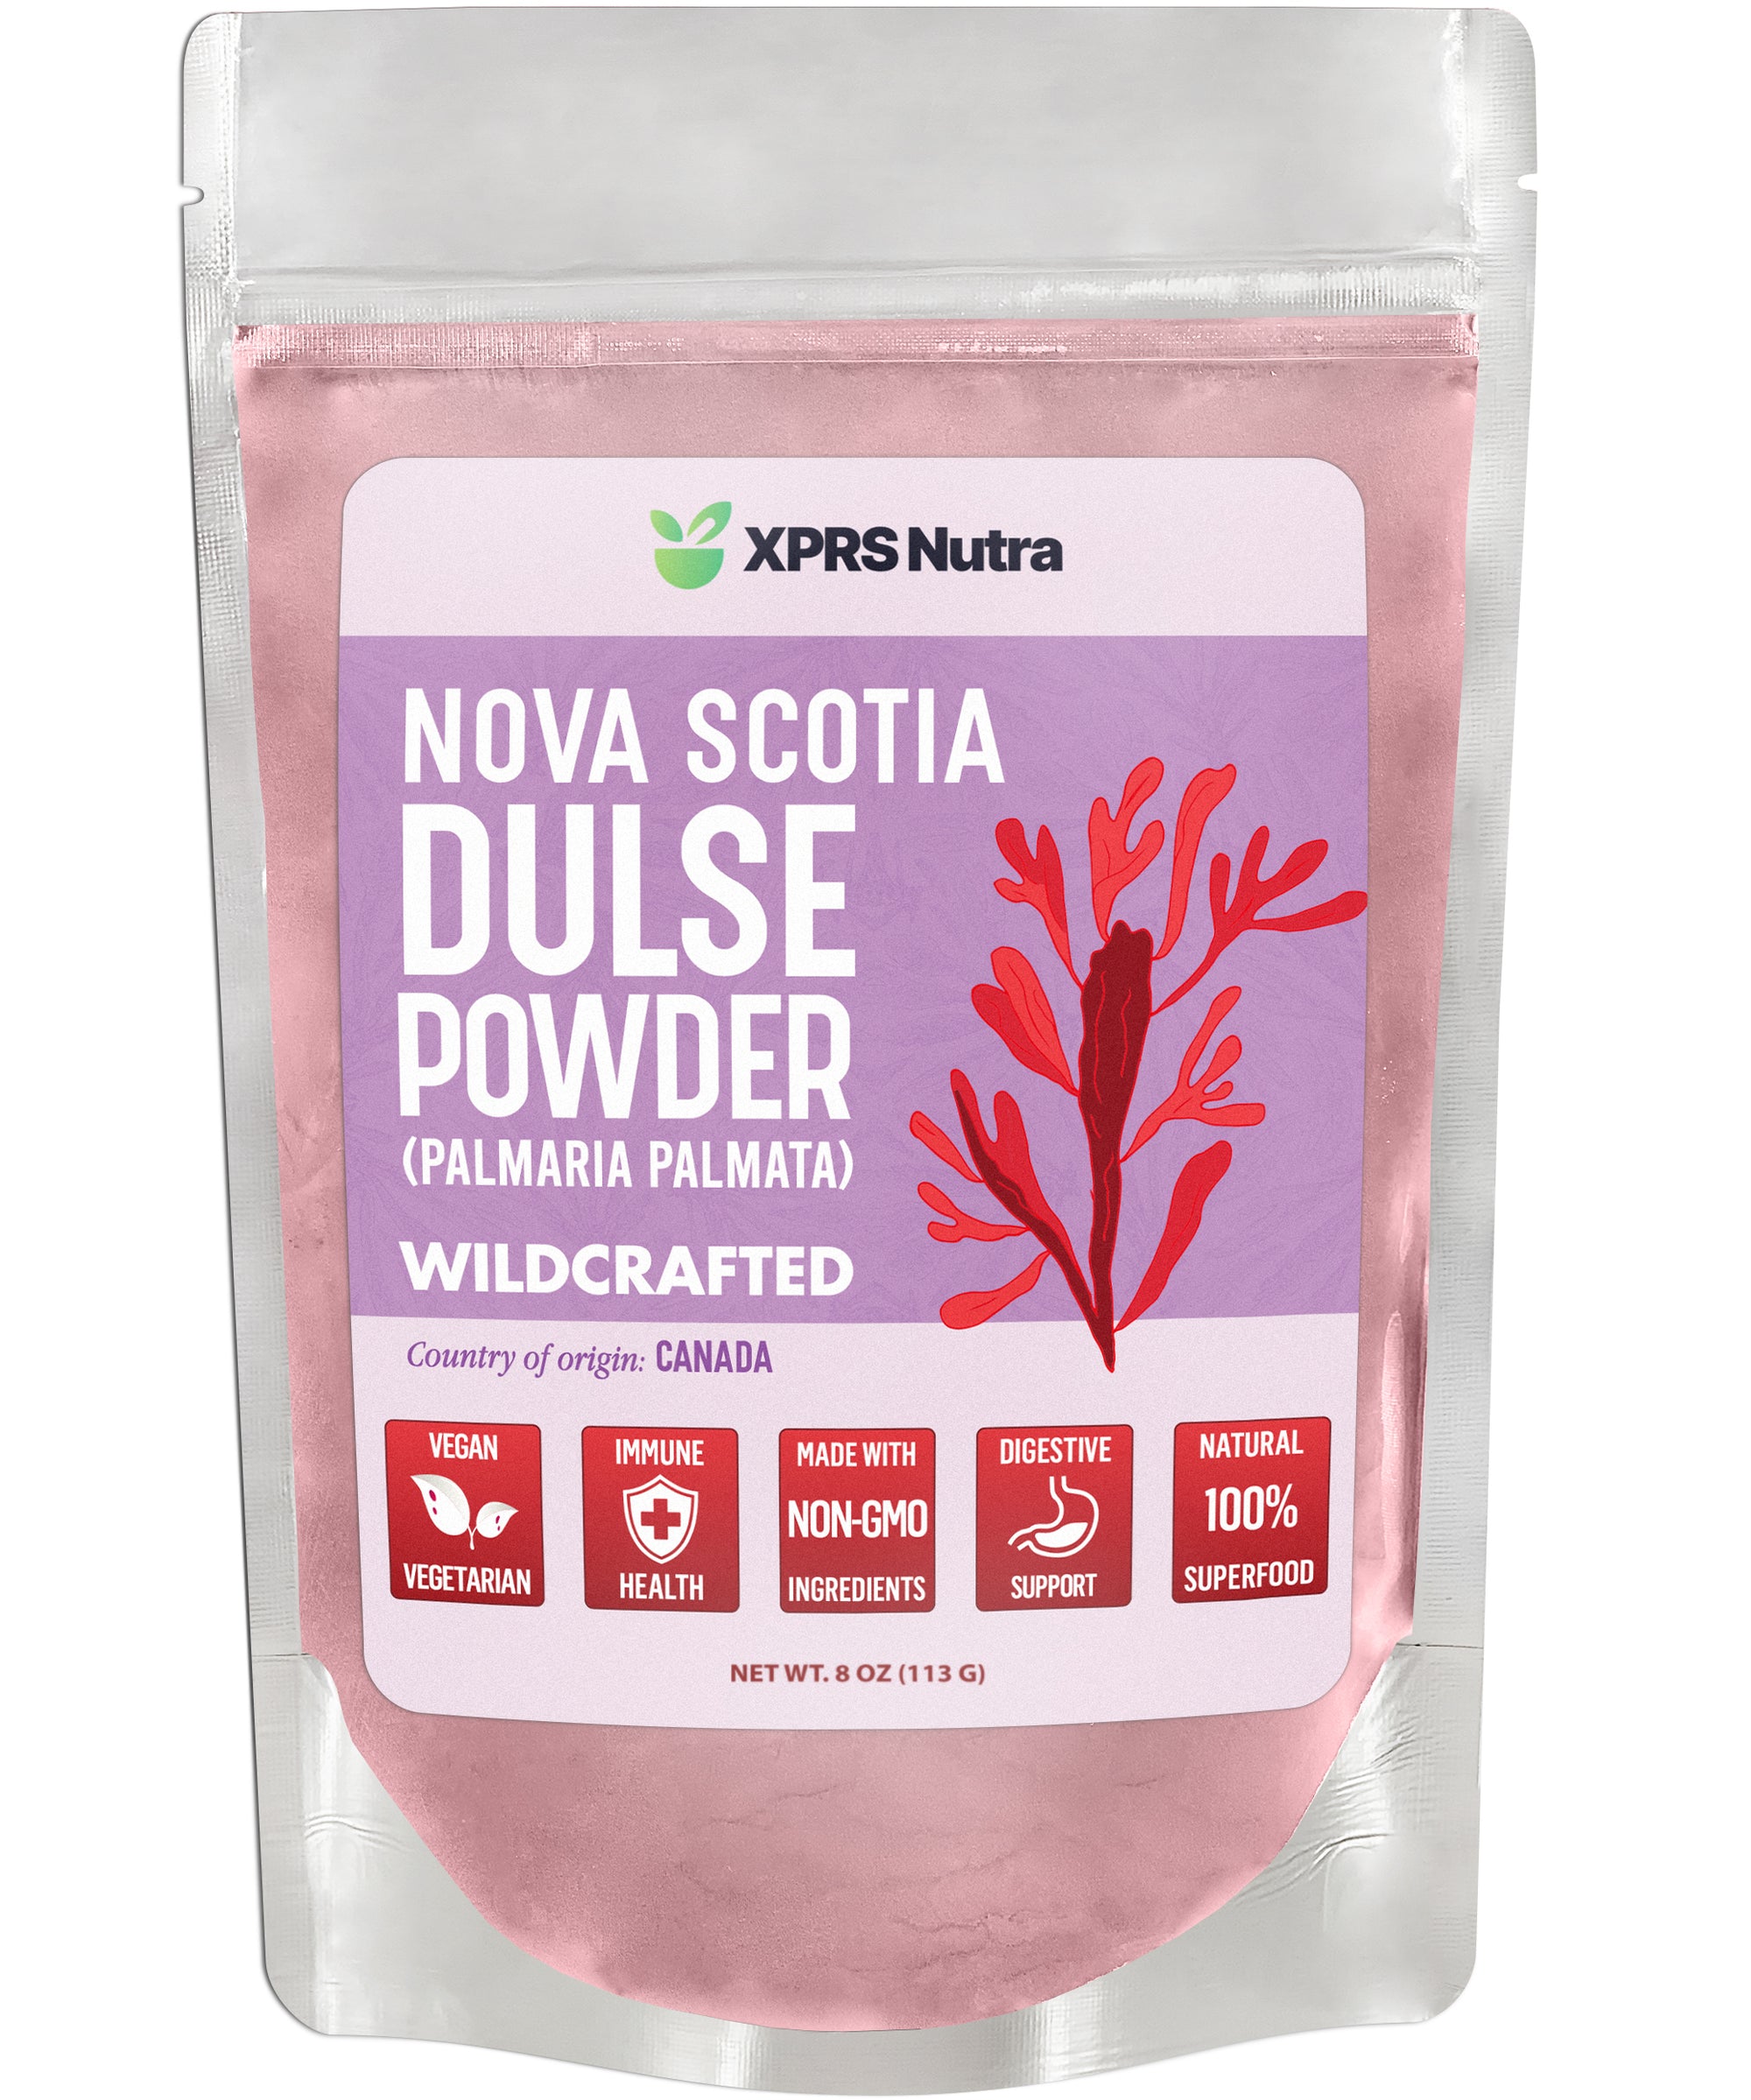 Wildcrafted Nova Scotia Dulse Powder